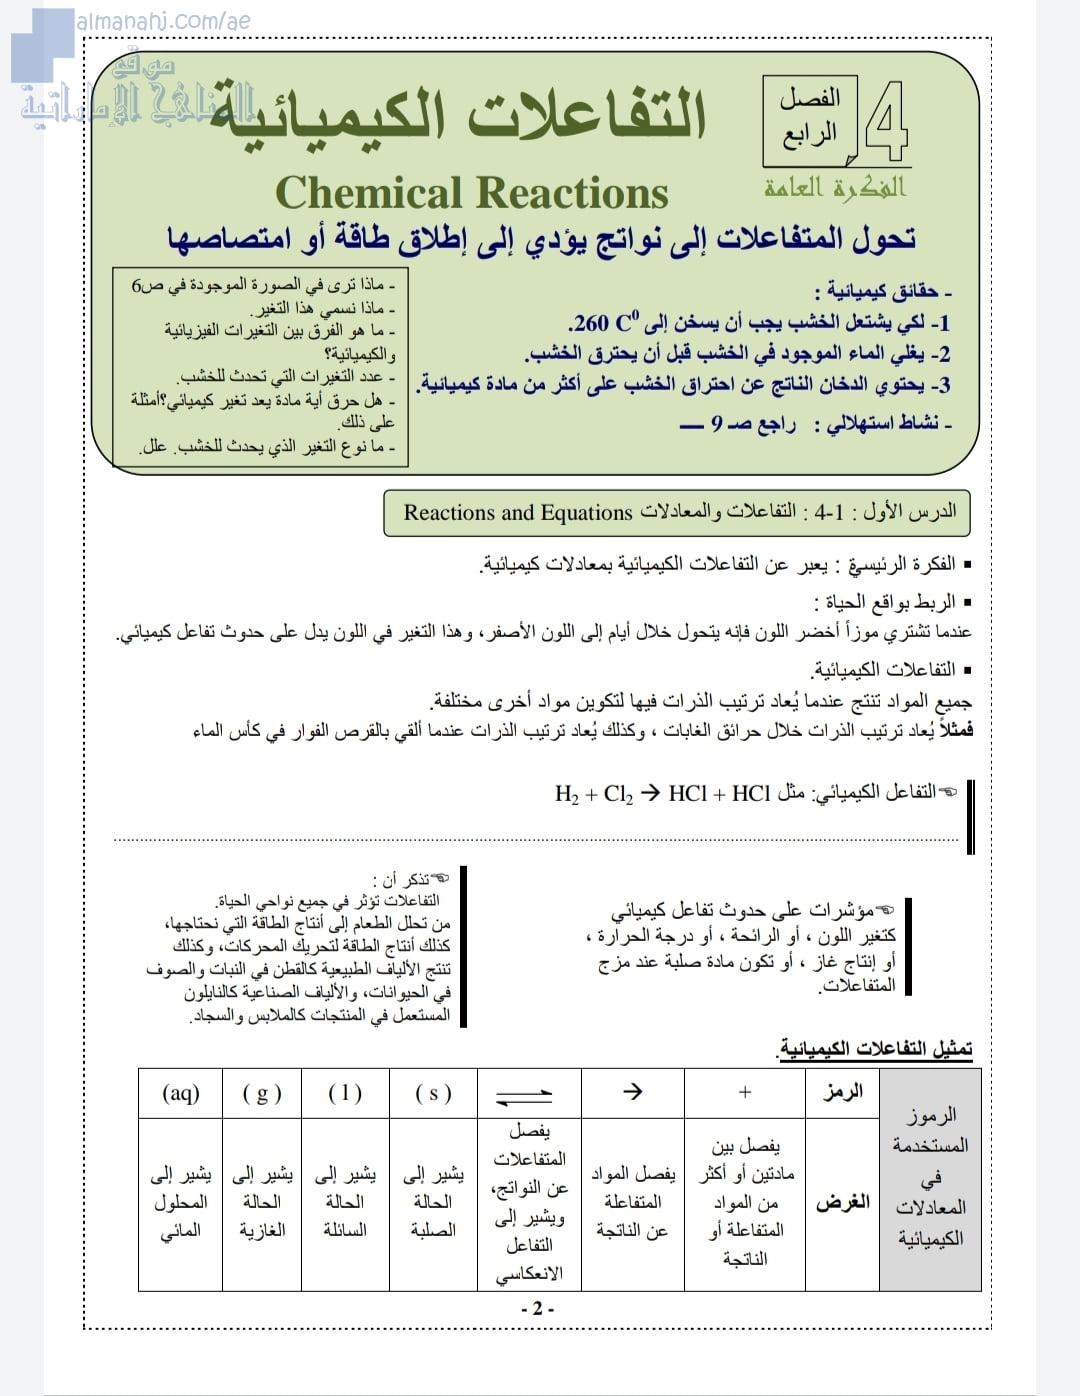 ملخص شرح شامل في التفاعلات الكيميائية والمول, (كيمياء) الثاني عشر المتقدم